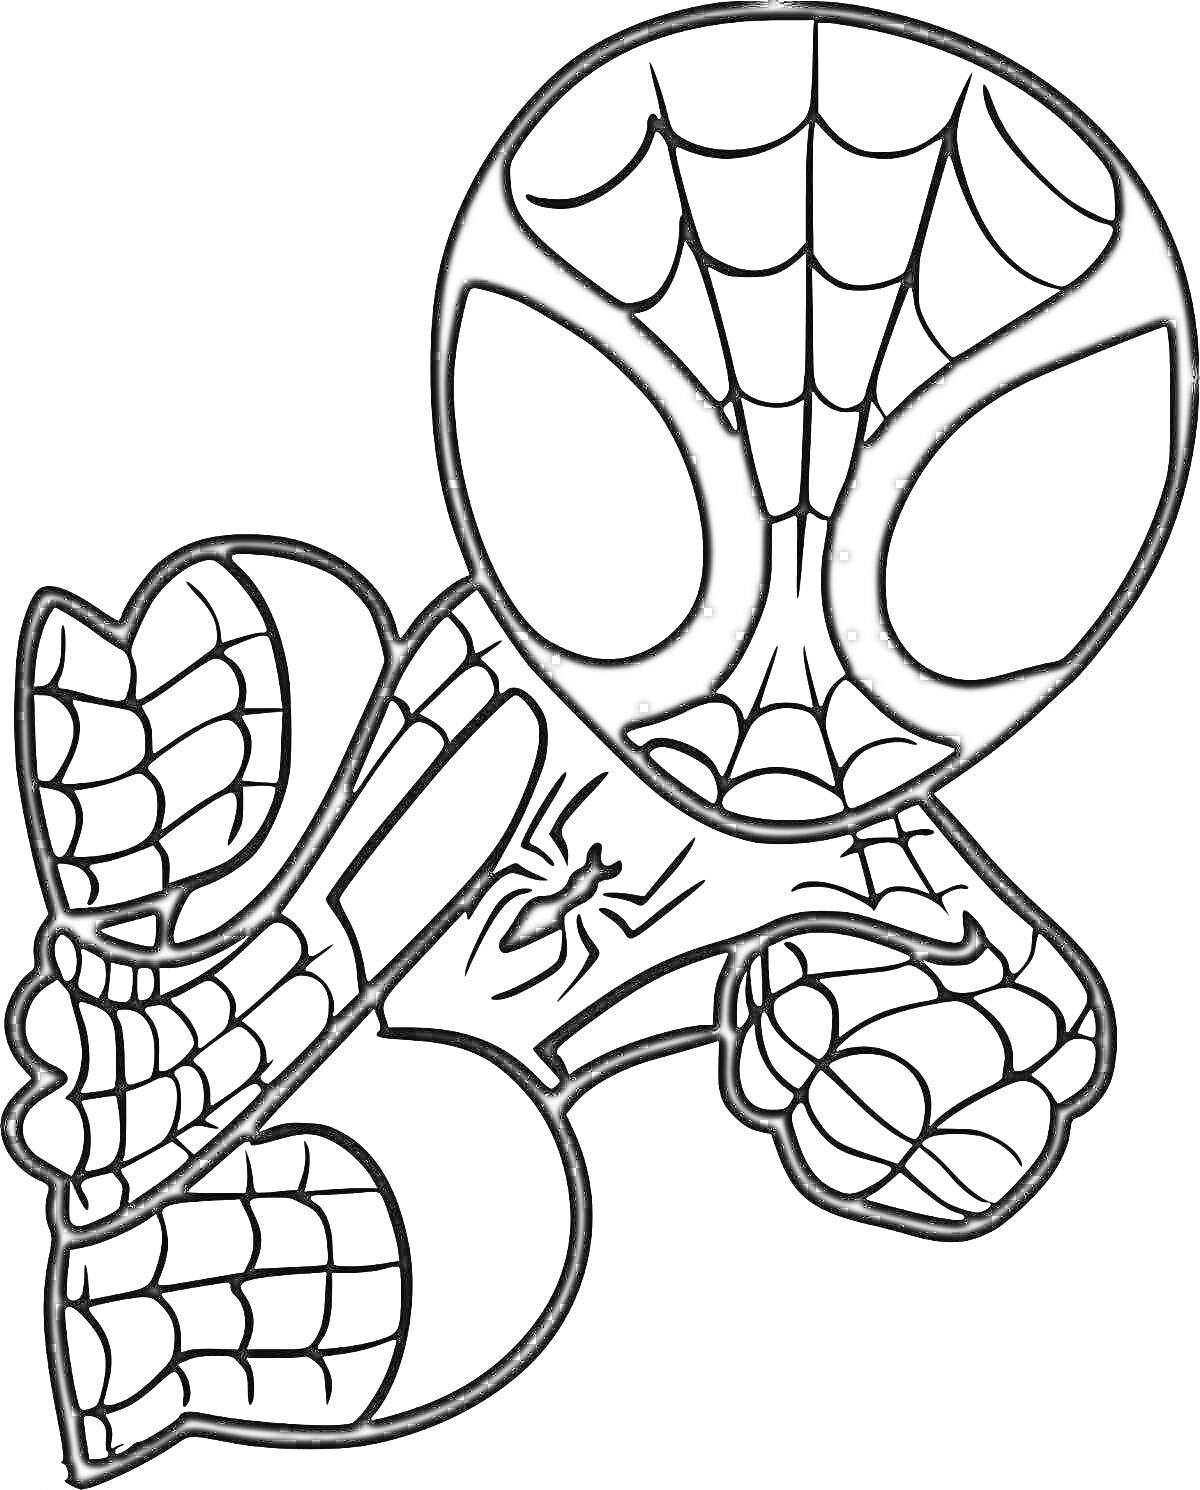 Раскраска Чиби Спайдермен в прыжке с паутиной на костюме